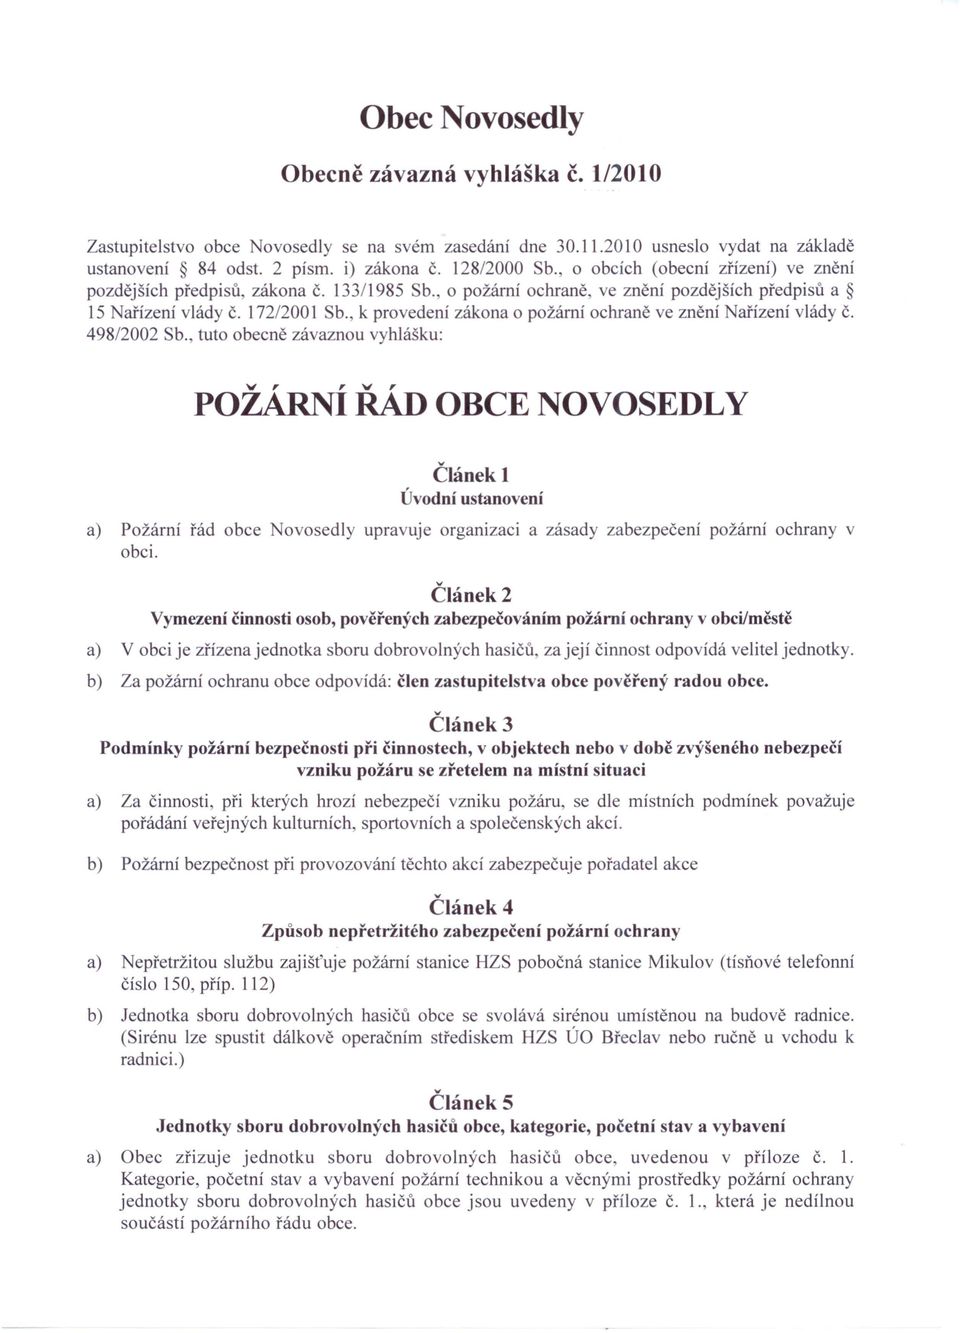 k provedení zákona o požární ochraně ve znění ařízení vlády Č. 498/2002 Sb.